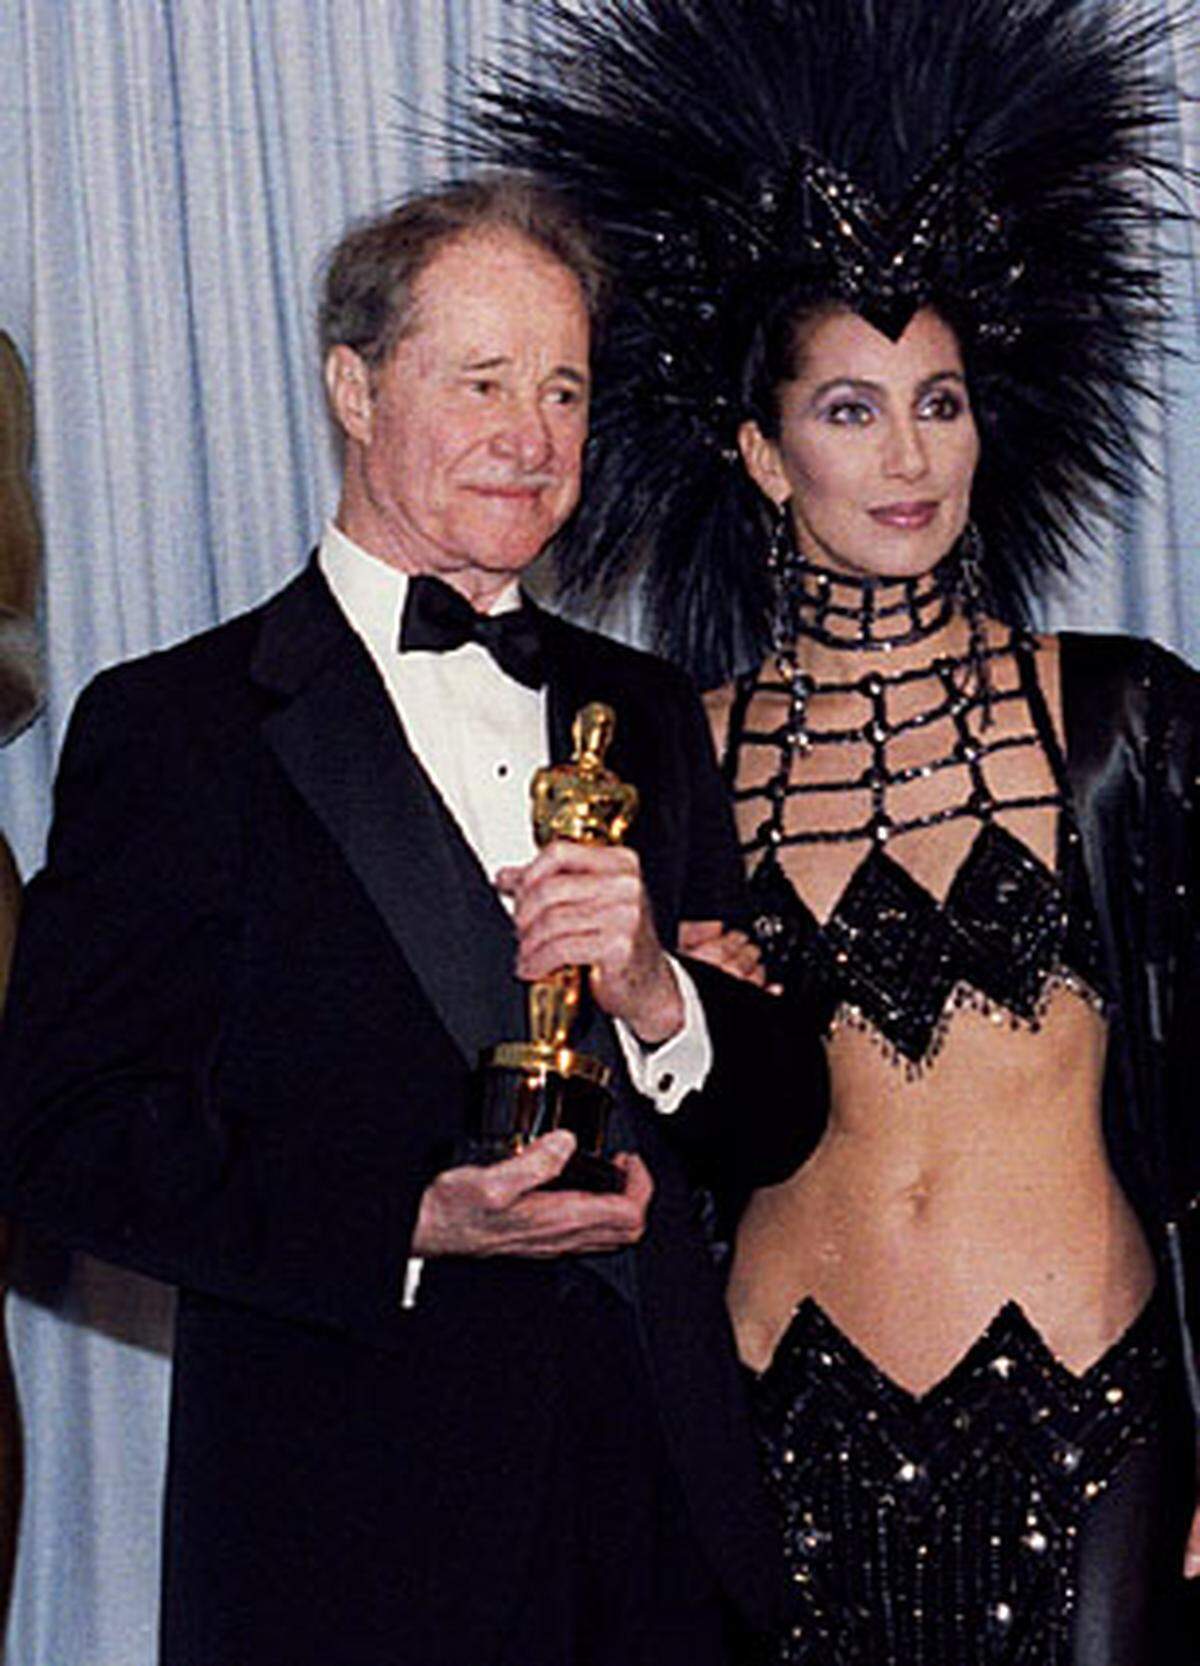 Cher. Ein Mode-Drama in drei Bildern.  1986 kam die Nebendarstellerin in Ron Howards "Cocoon" bauchfrei. Co-Star Don Ameche wirkt trotz Oscar-Erfolges peinlich berührt.